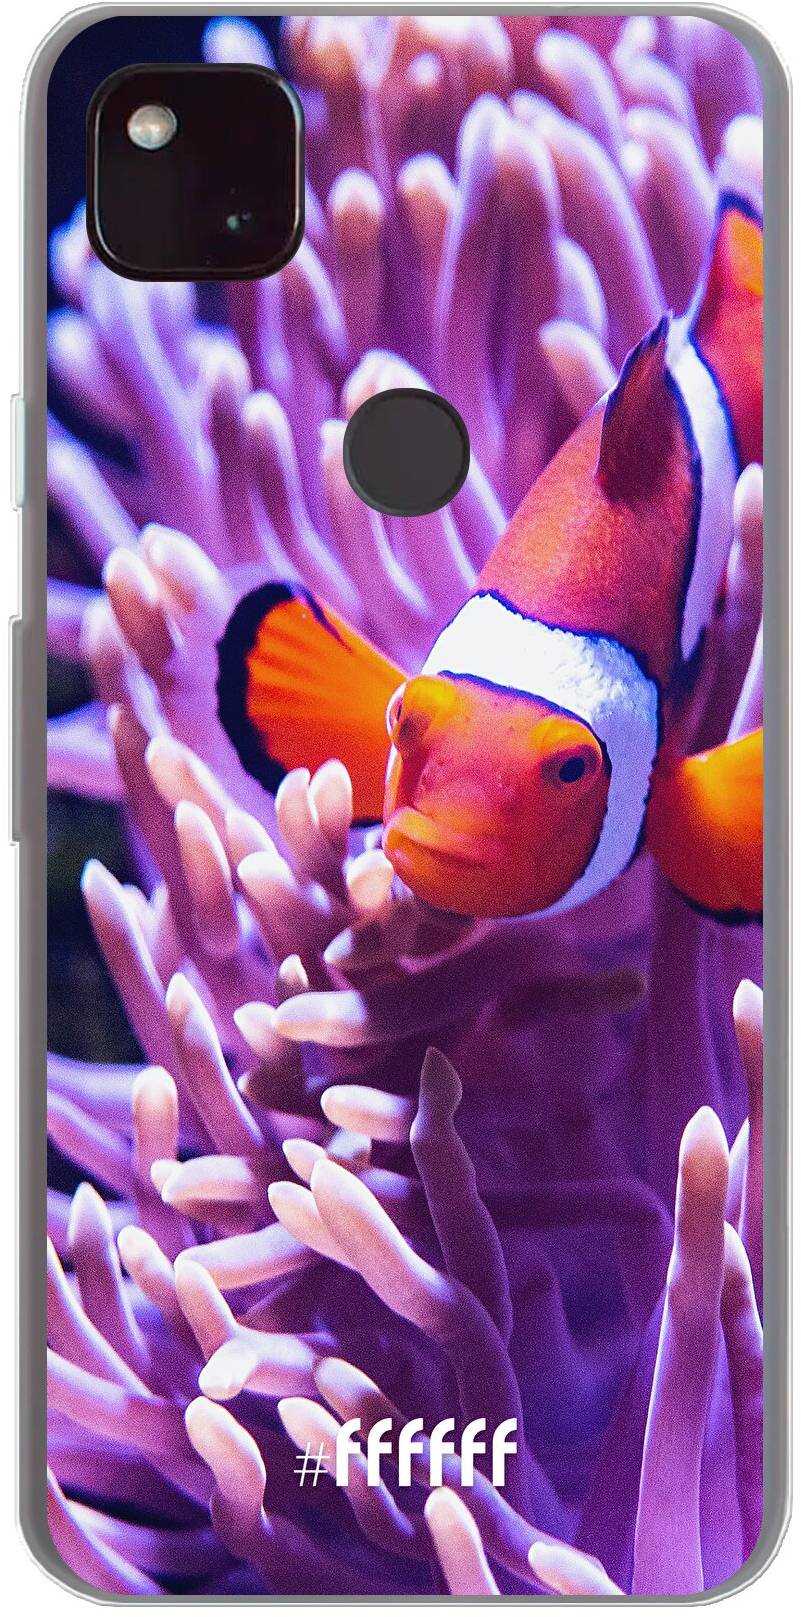 Nemo Pixel 4a 5G